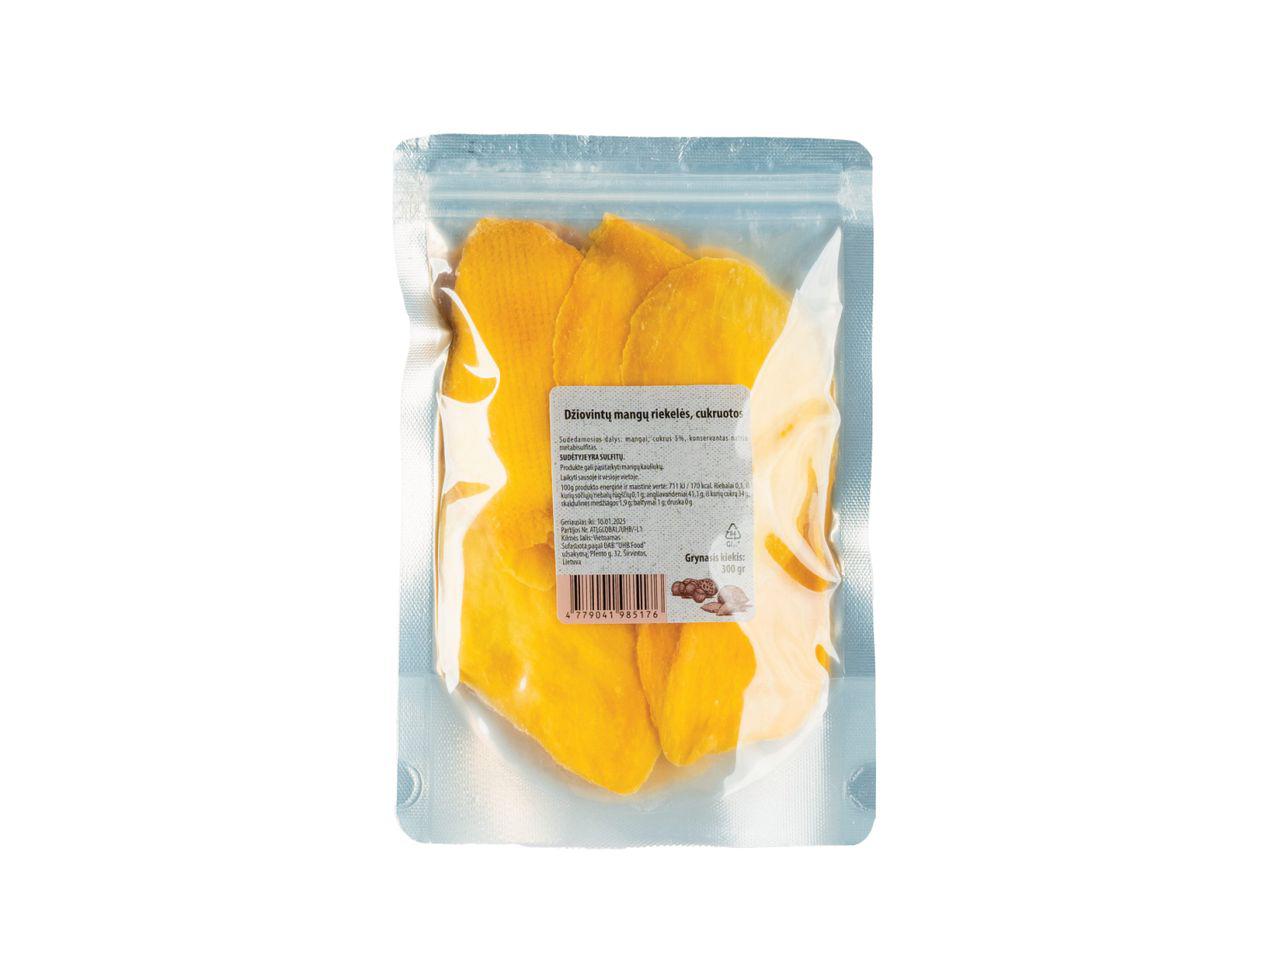 Prekė: Cukruotos džiovintų mangų riekelės